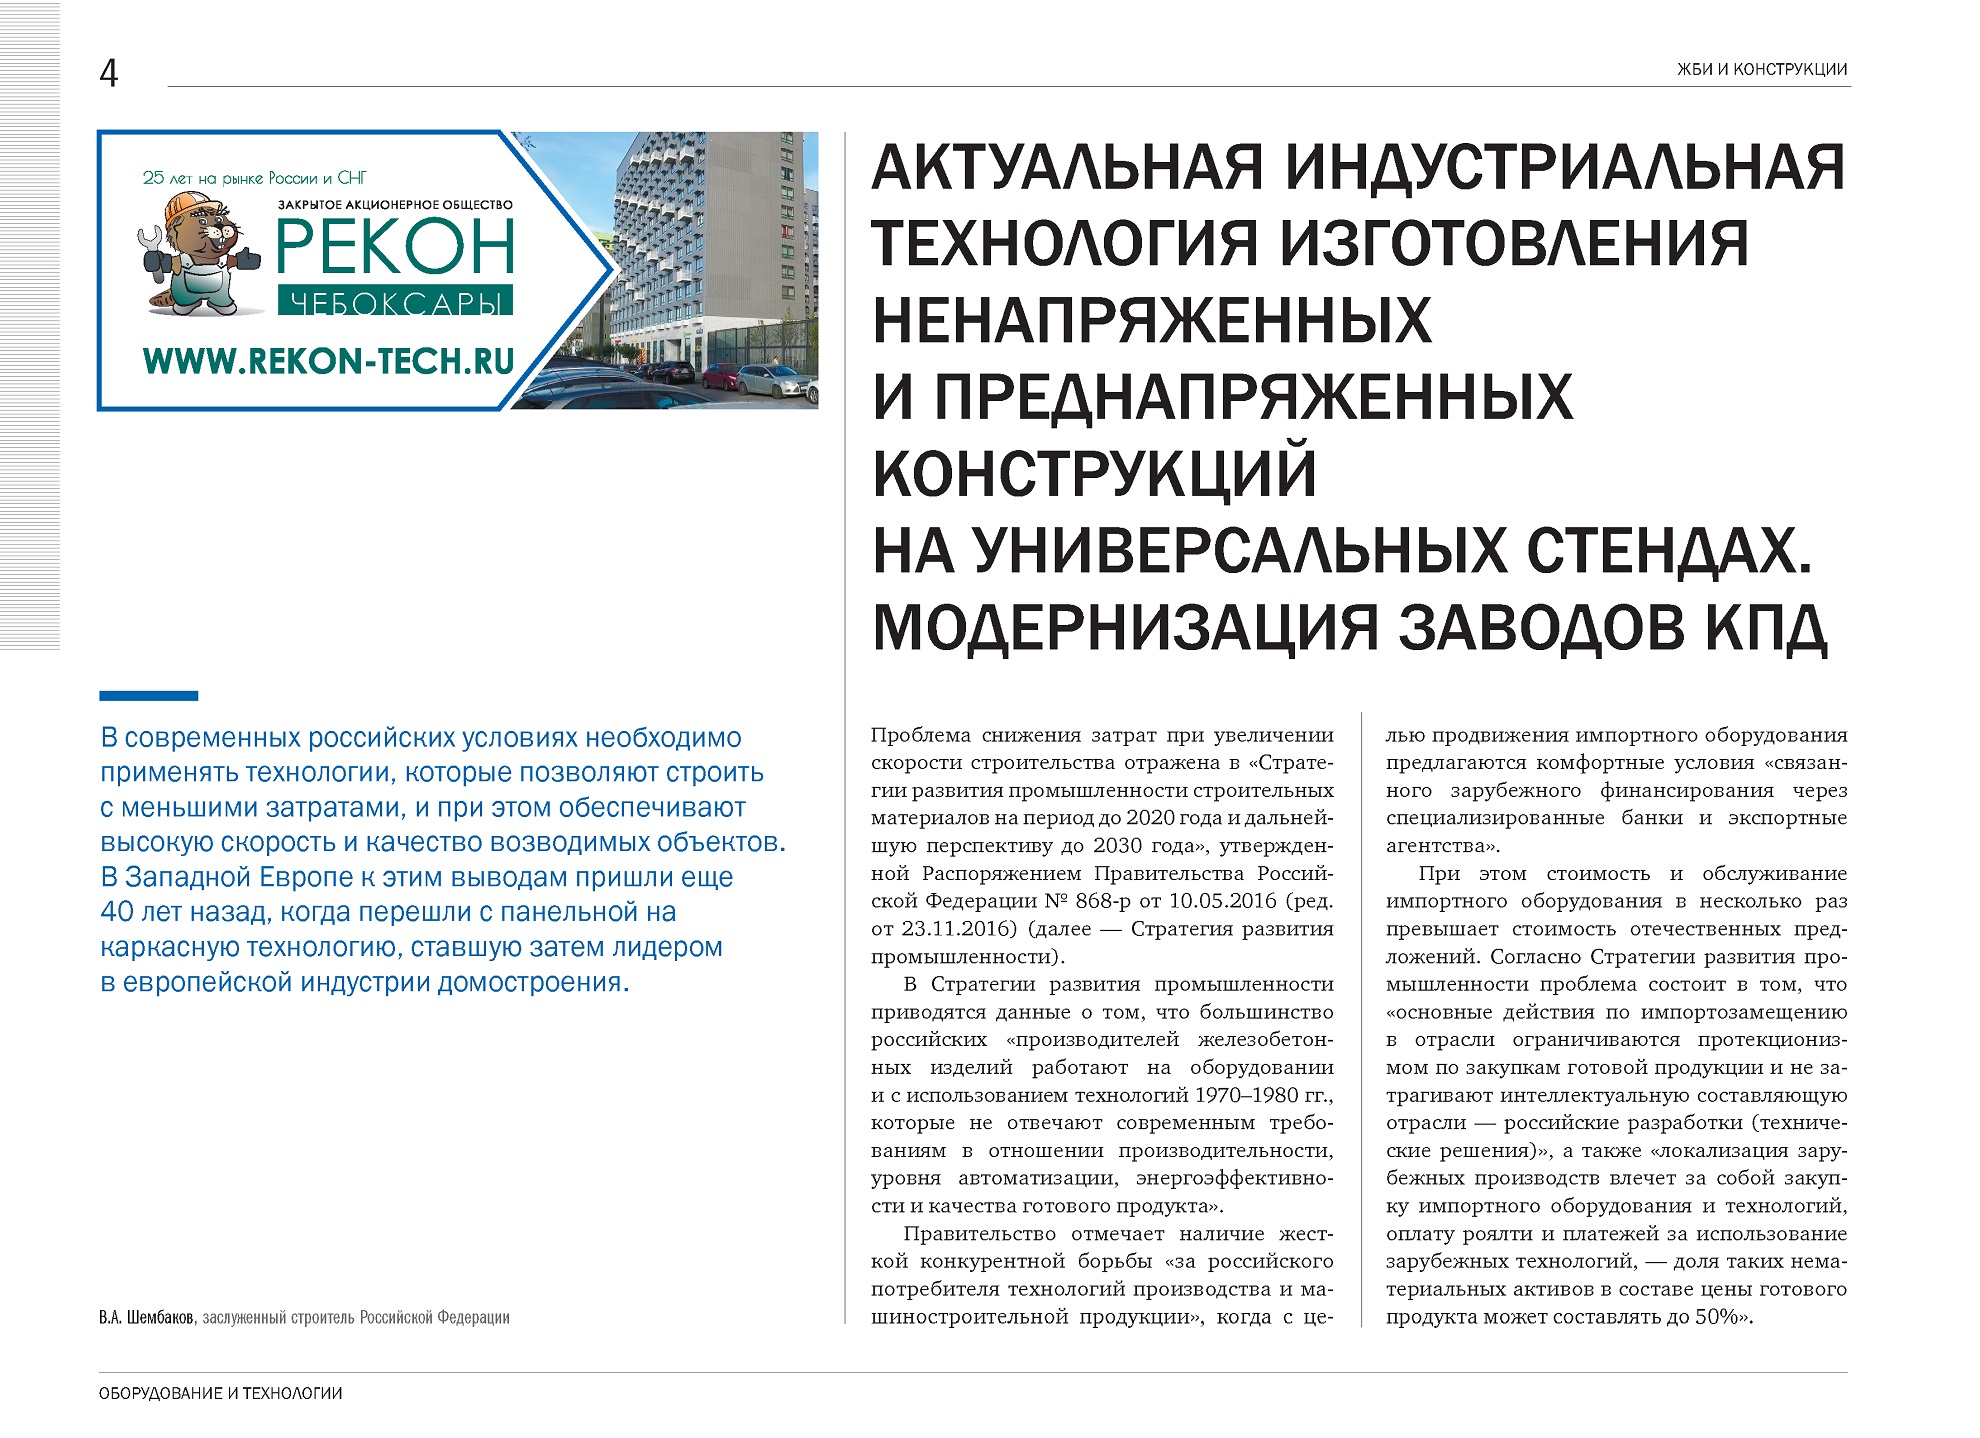 Cтатья В.А. Шембакова  в новом номере журнала «ЖБИ и конструкции»